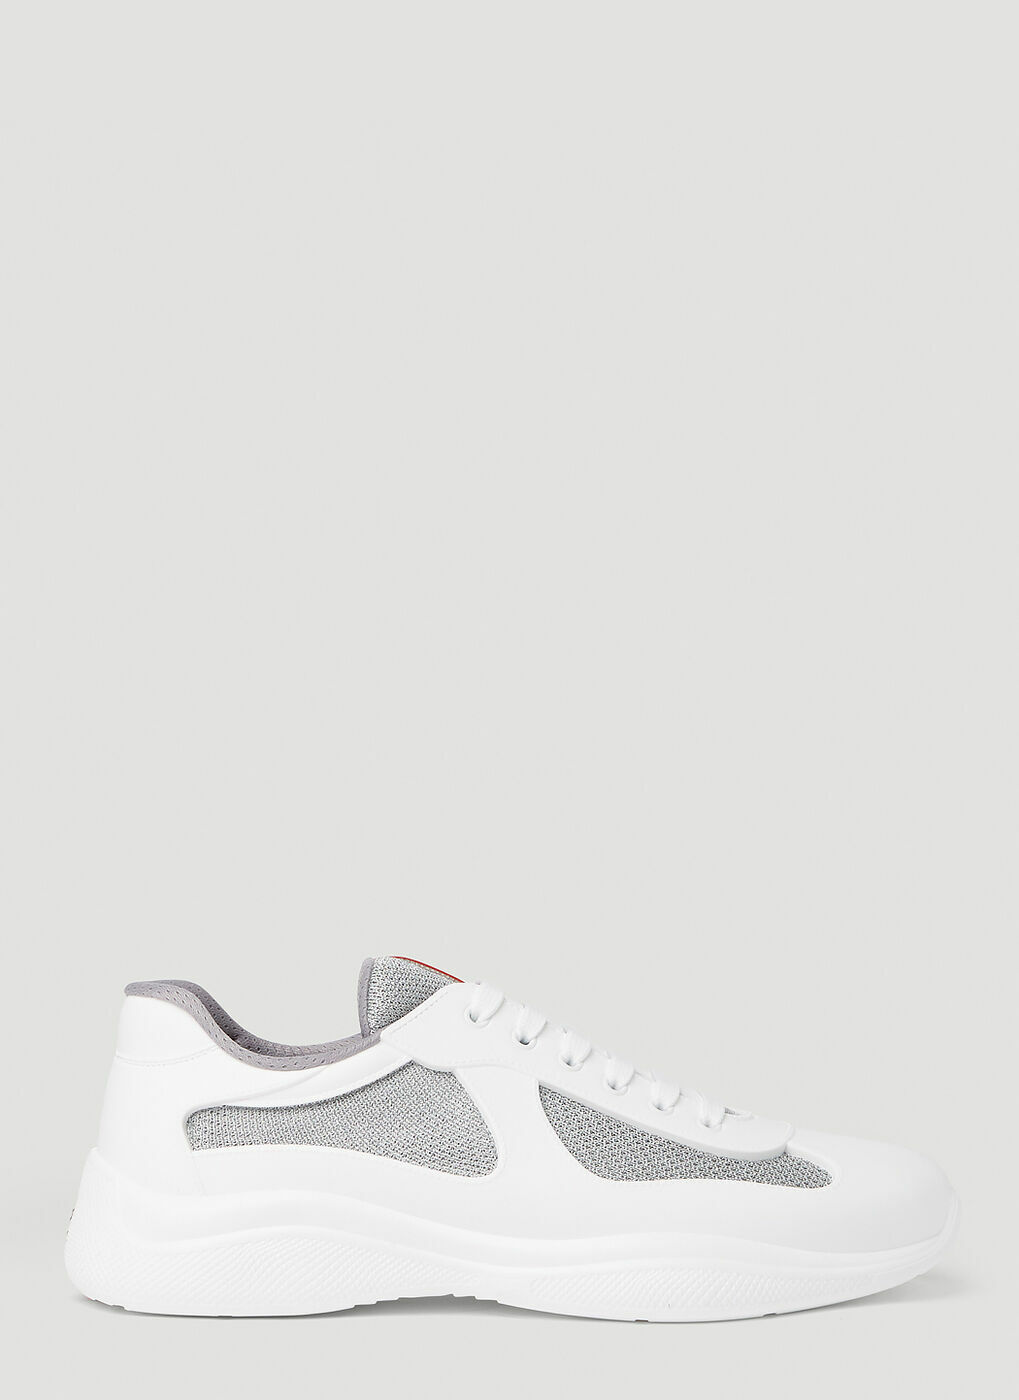 Prada - Prada America's Cup Sneakers in White Prada